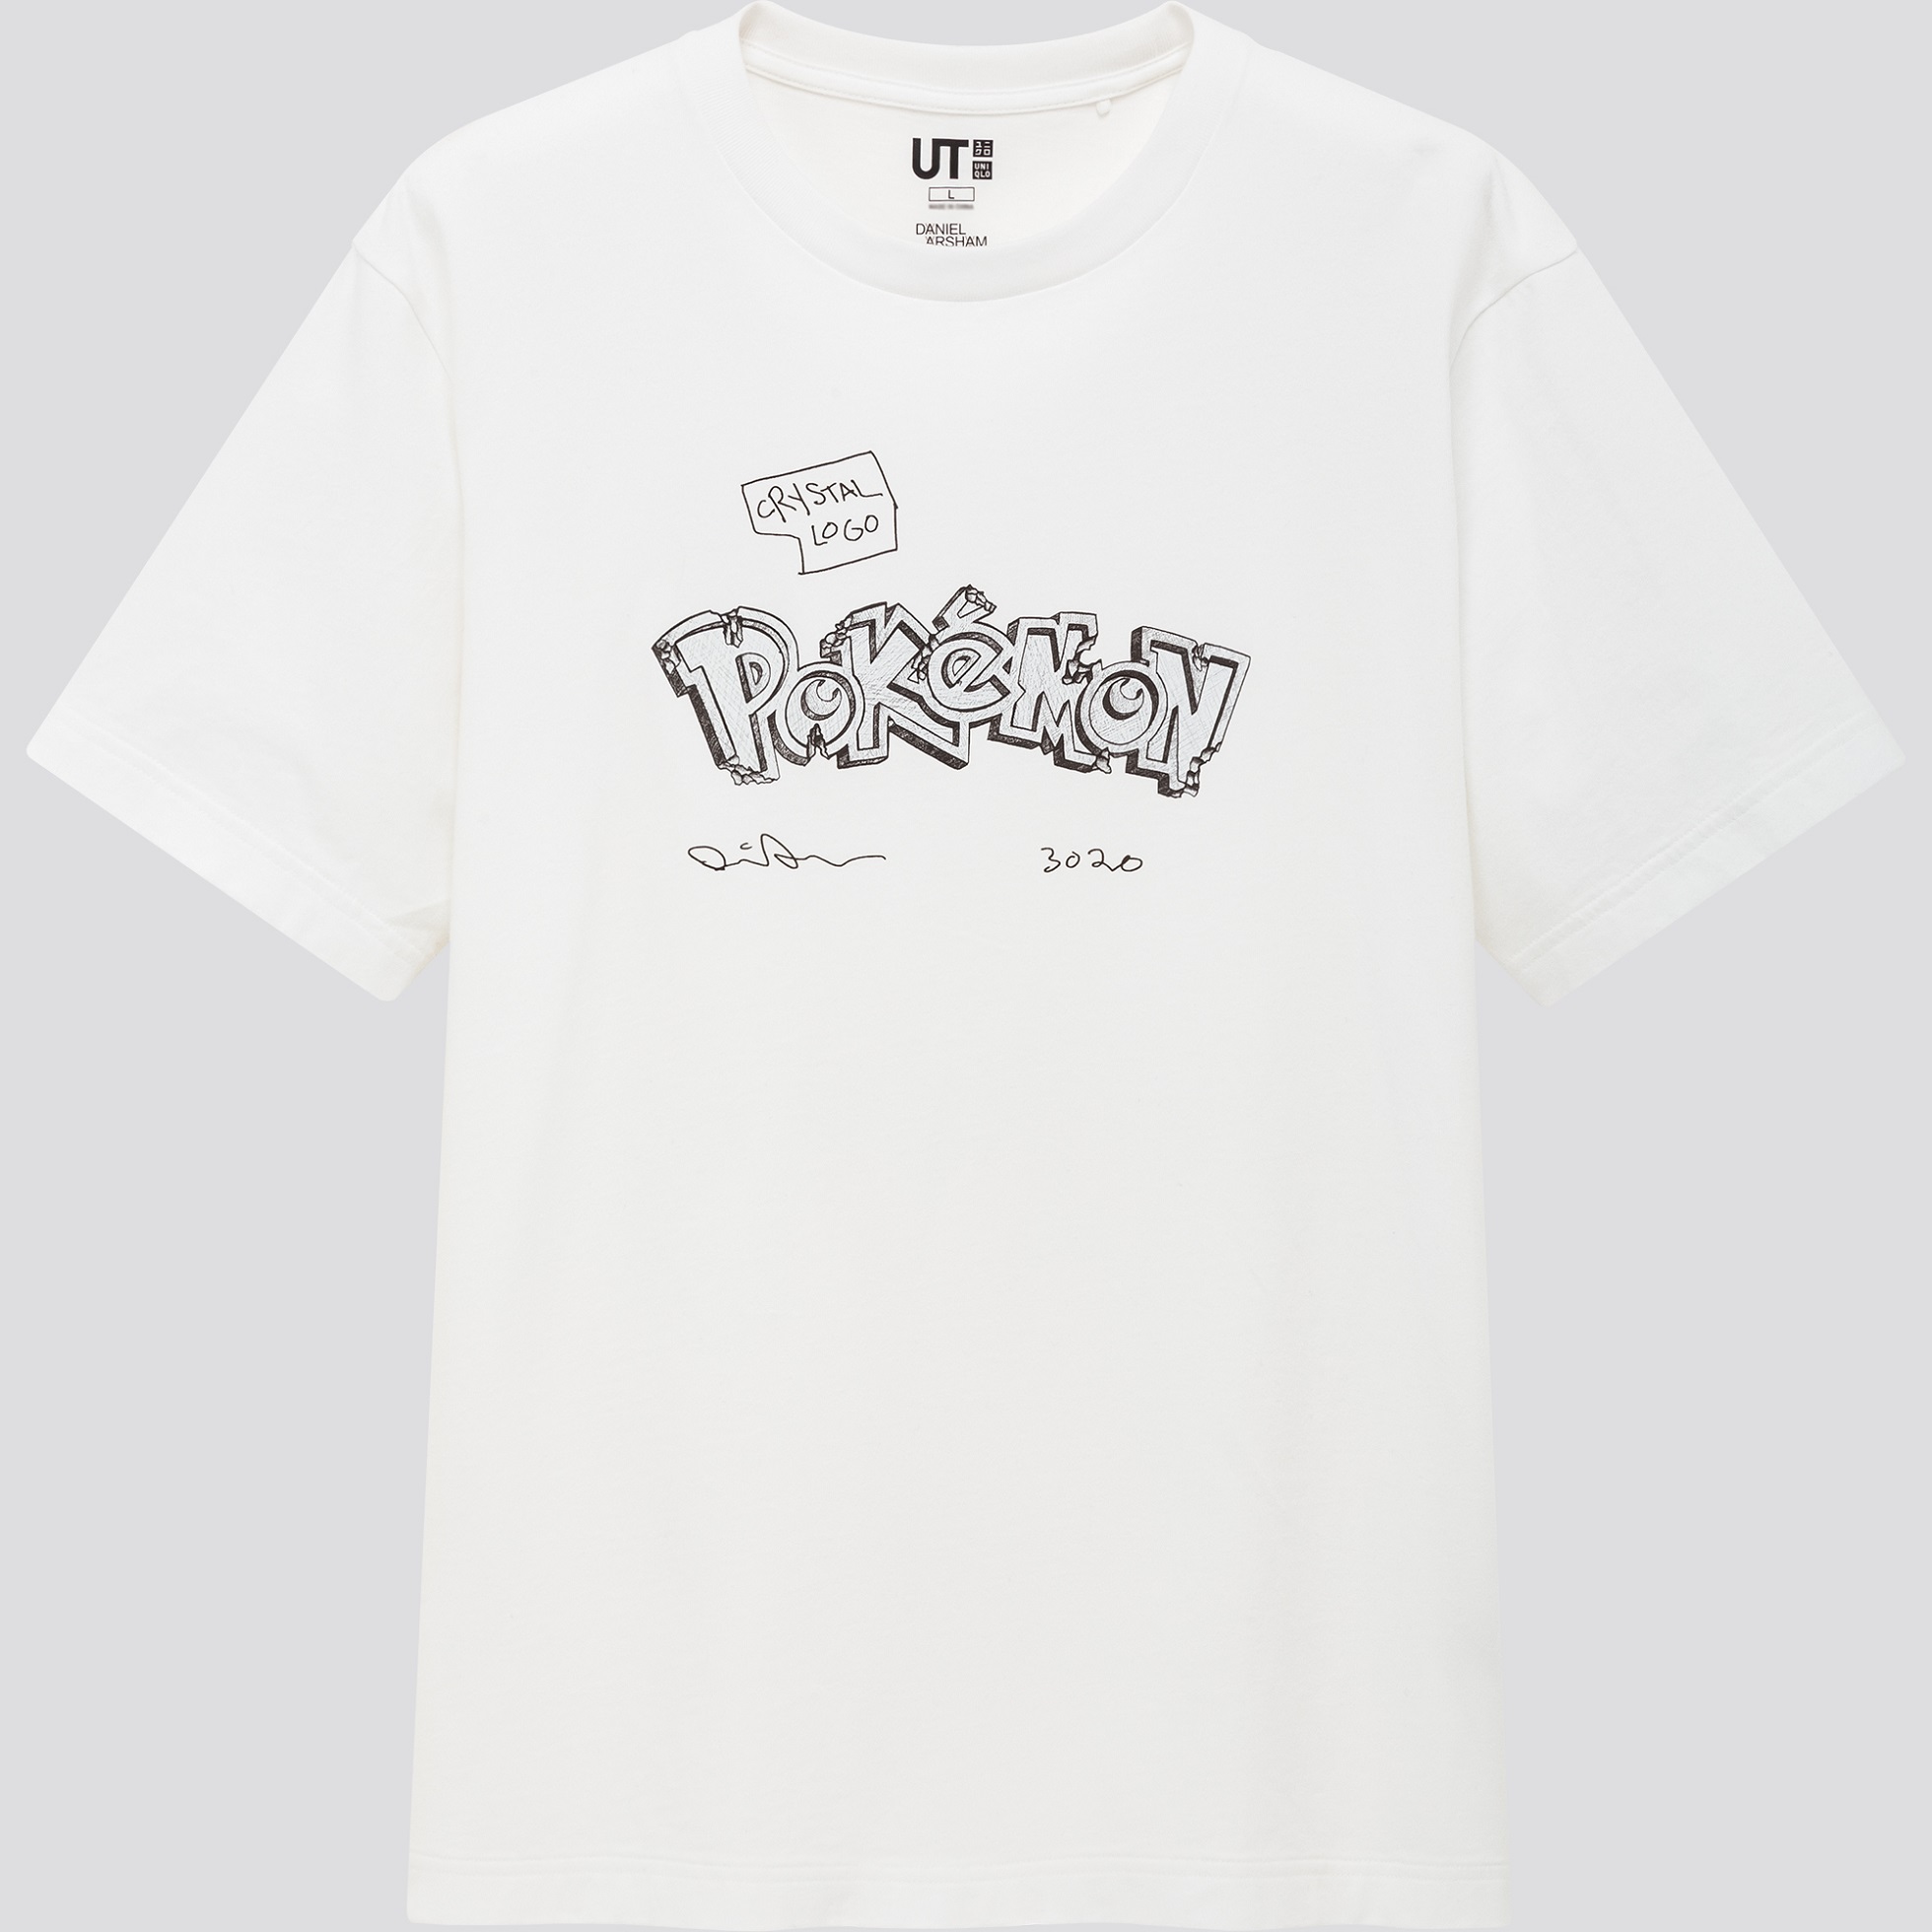 男裝 Daniel Arsham X Pokémon UT (印花T恤_短袖)  NT$590 單品圖3.jpg